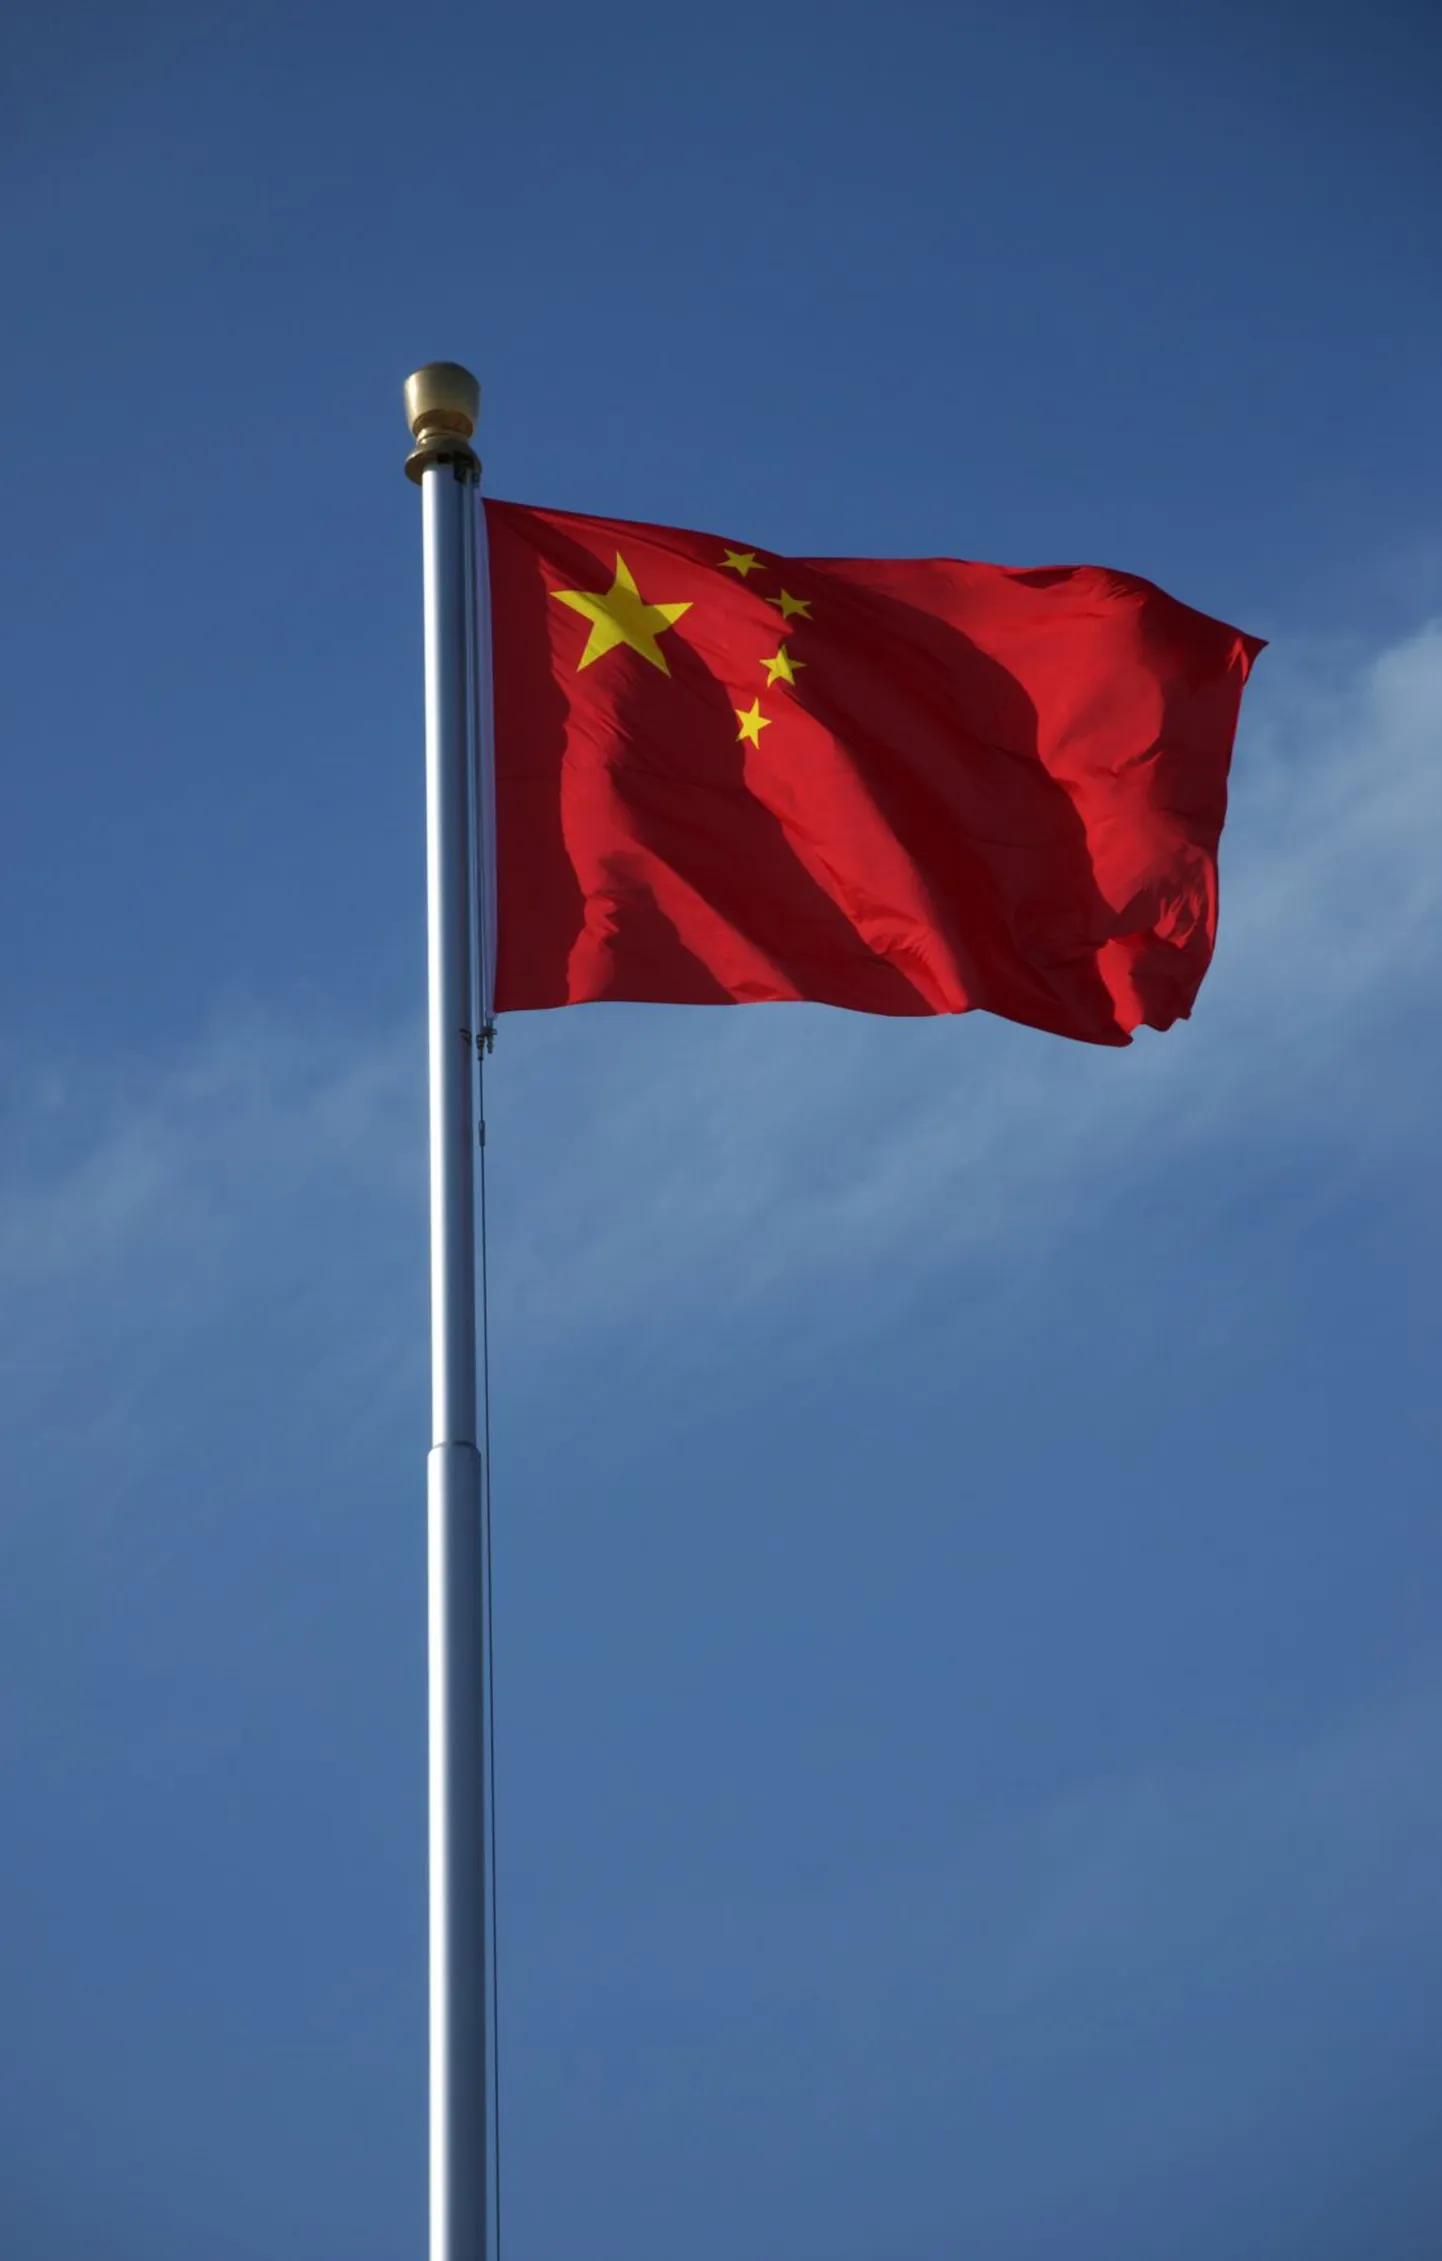 Hiina Rahvavabariigi lipp.